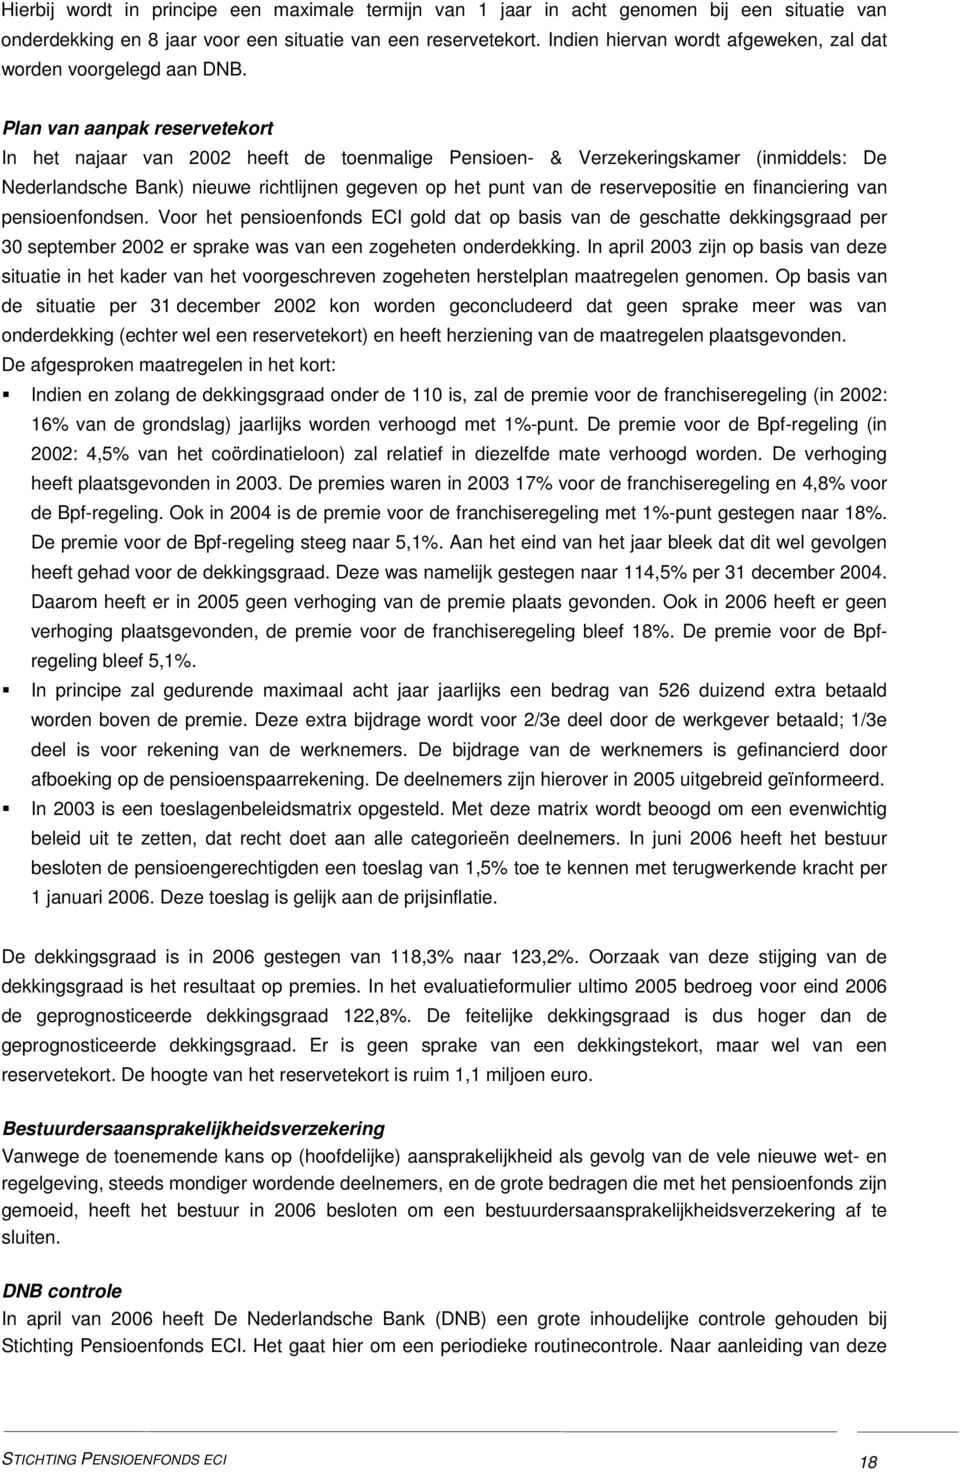 Plan van aanpak reservetekort In het najaar van 2002 heeft de toenmalige Pensioen- & Verzekeringskamer (inmiddels: De Nederlandsche Bank) nieuwe richtlijnen gegeven op het punt van de reservepositie